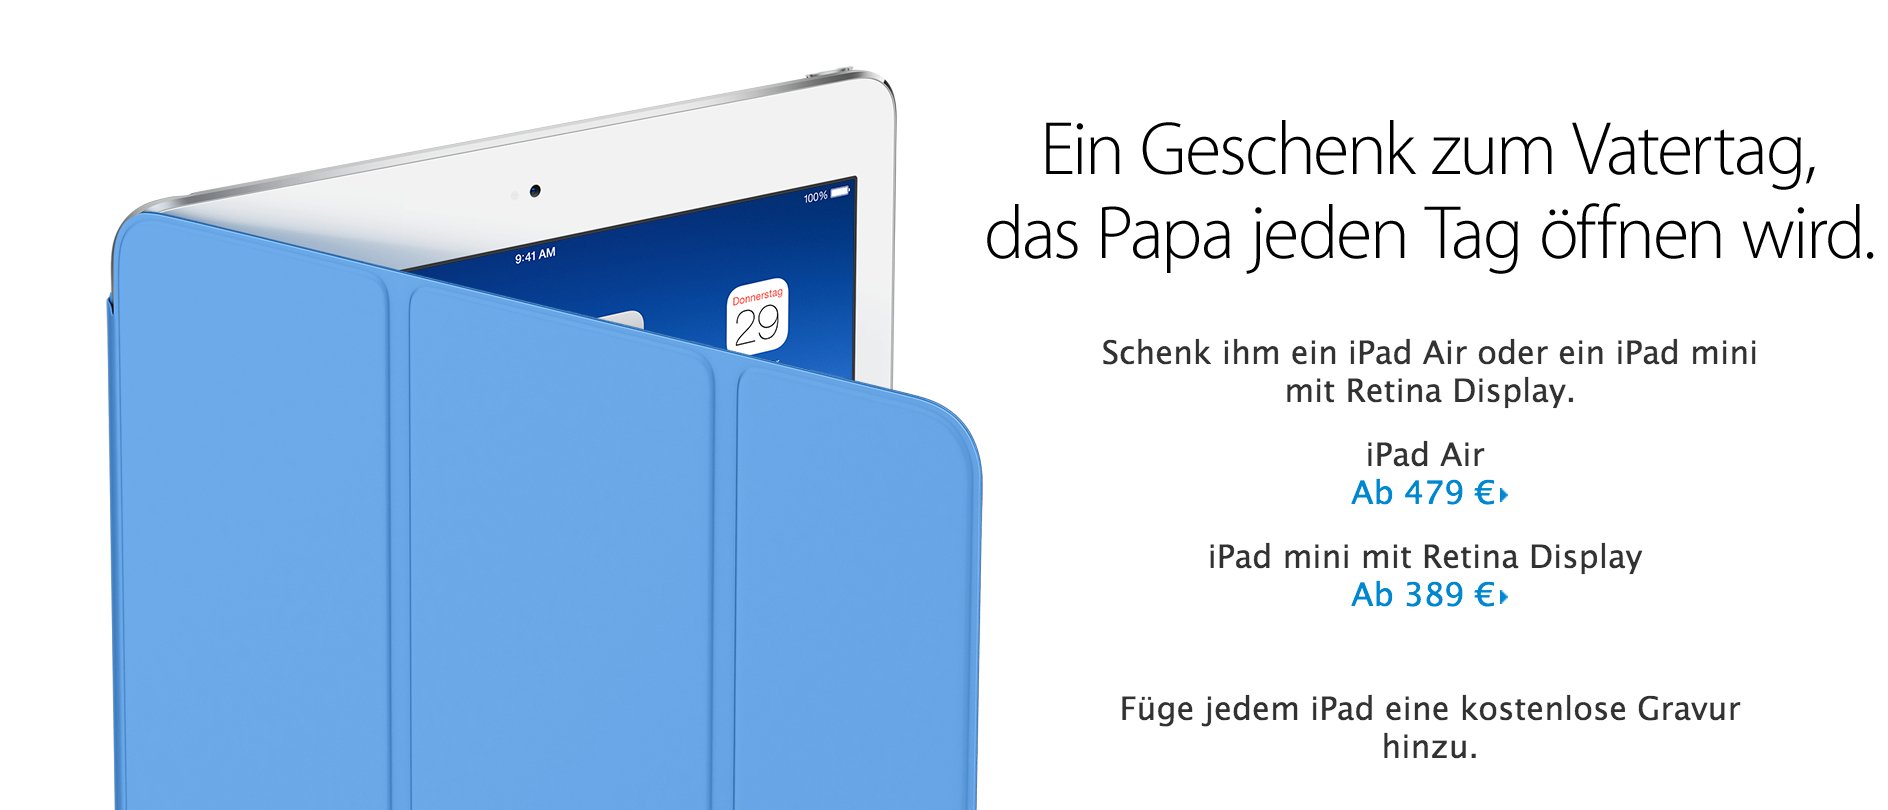 Geschenke zu Vatertag: Schenke Papa ein iPad! 5